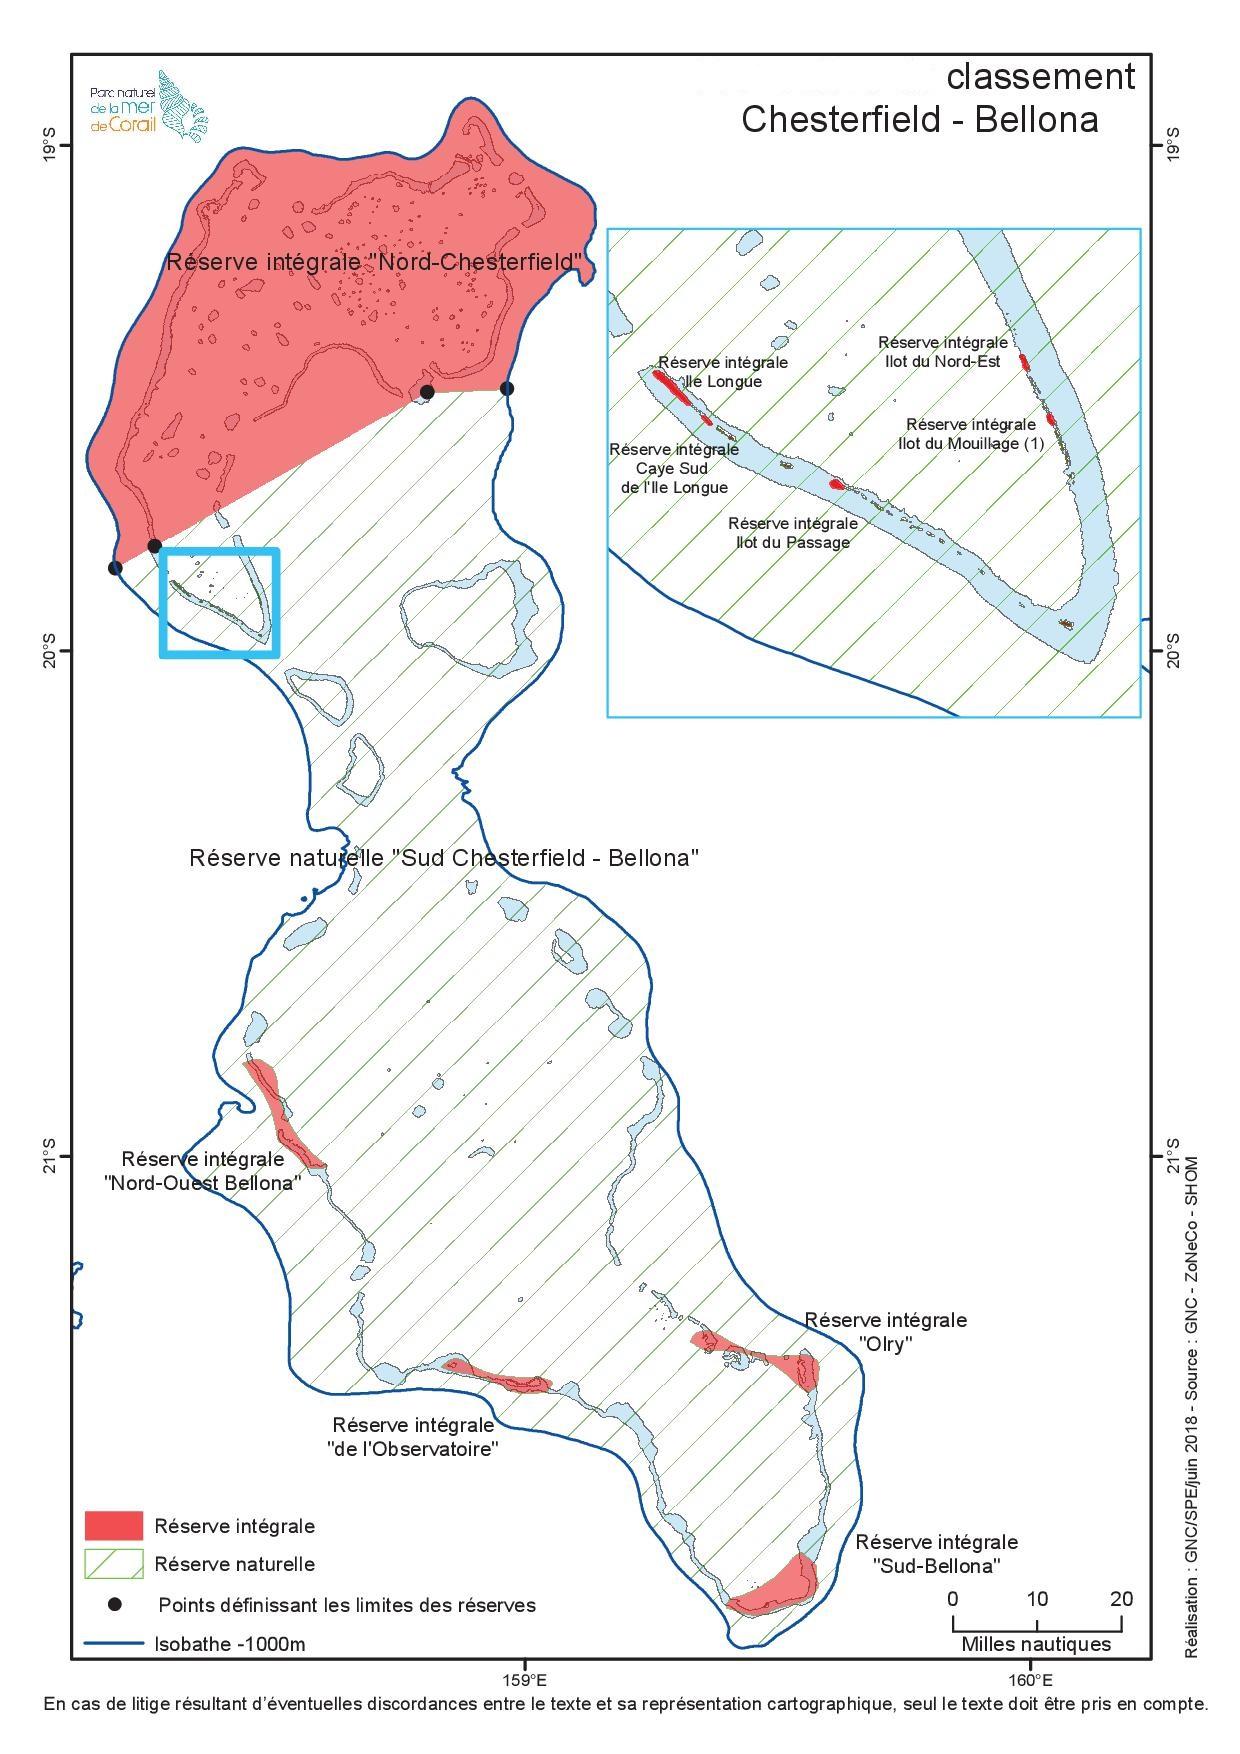 Carte de classement en réserves naturelles et intégrales des Chesterfield-Bellona